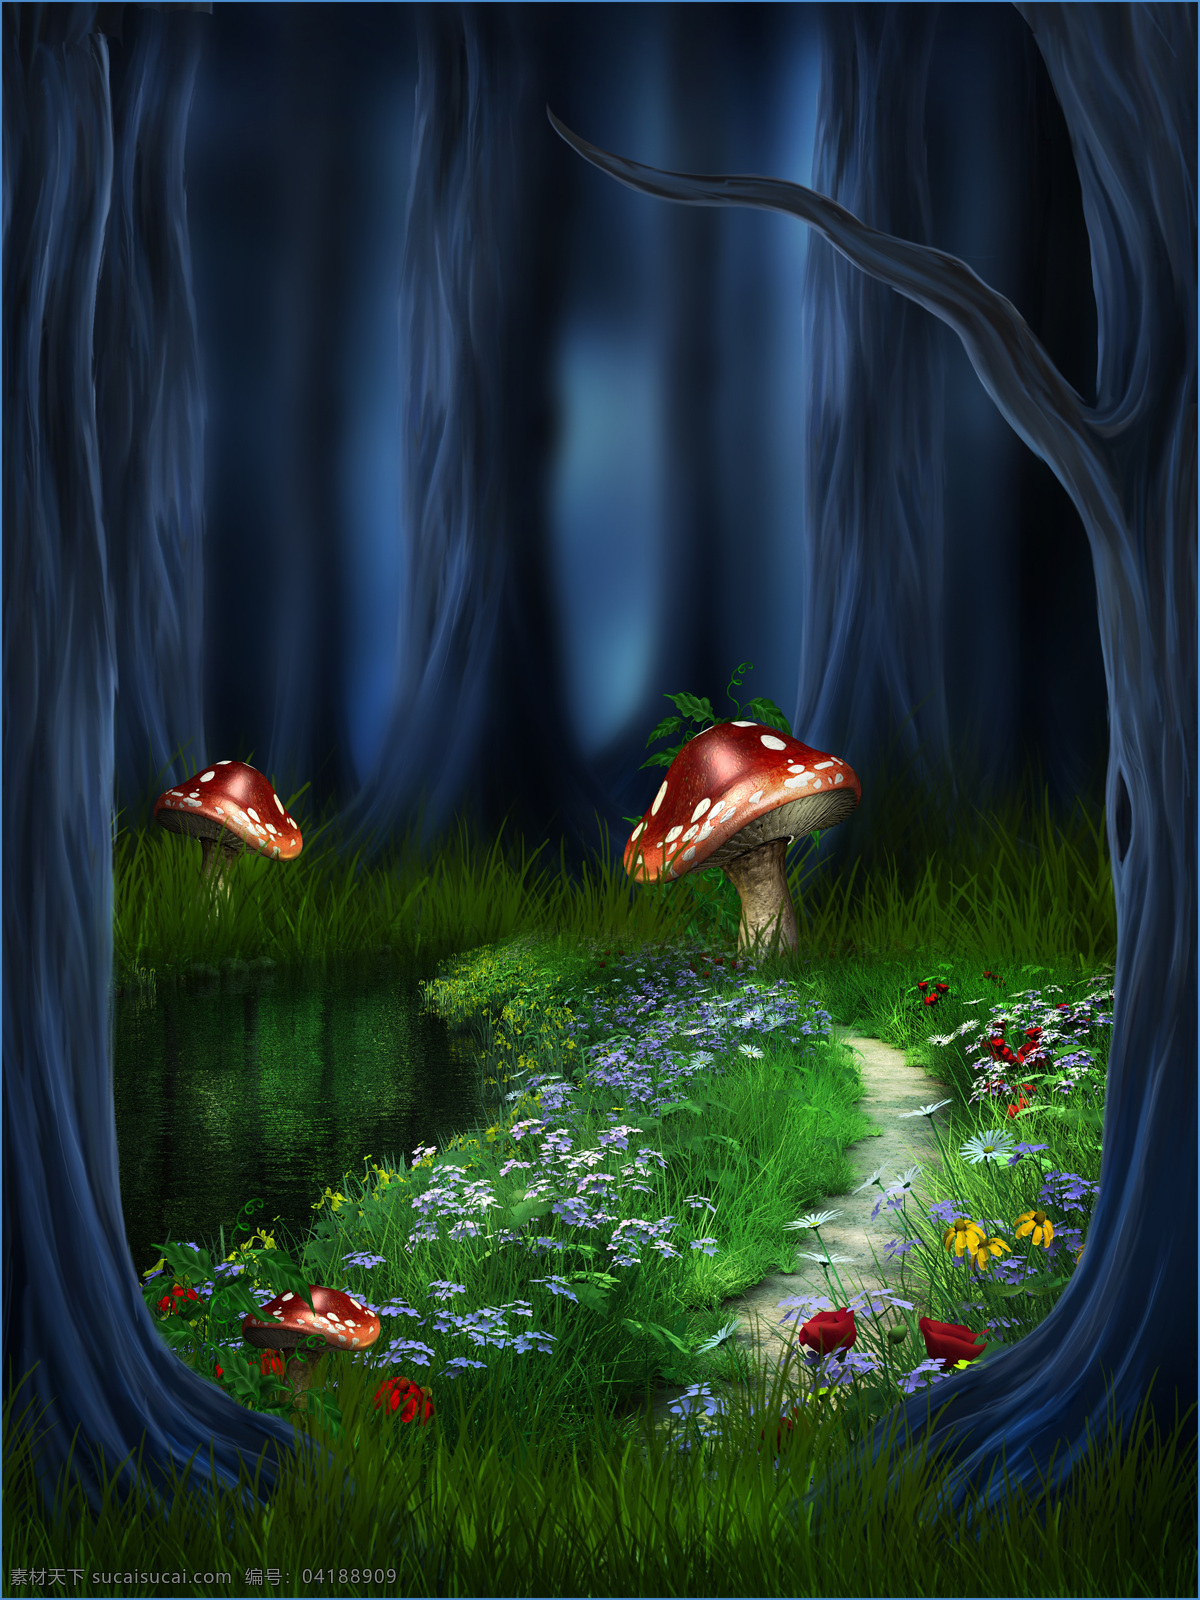 油画 夜色 蘑菇 风景 图 草地 灯光 花朵 树木 外景大图 夜色背景大图 梦幻油画图 背景图片